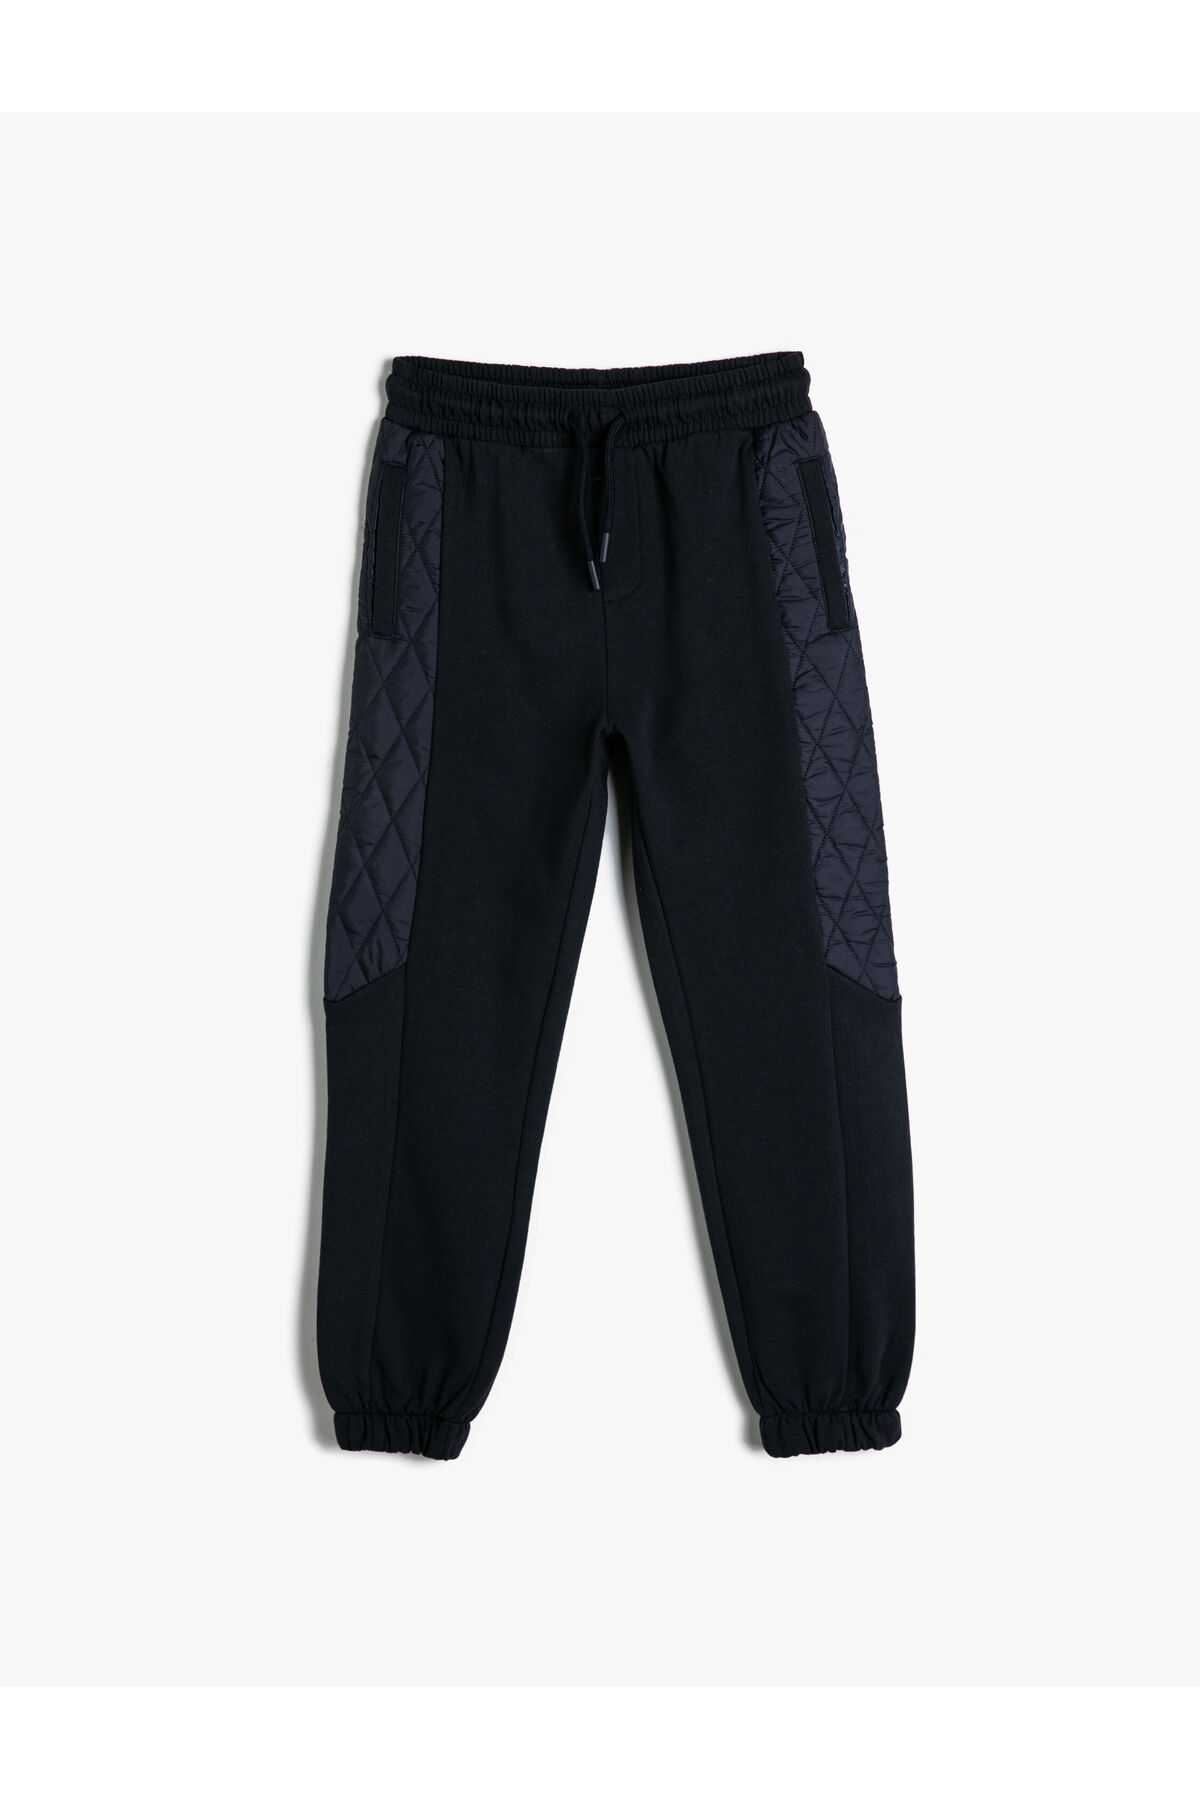 Levně Koton Jogger Sweatpants Pocket Quilted Detail Cotton